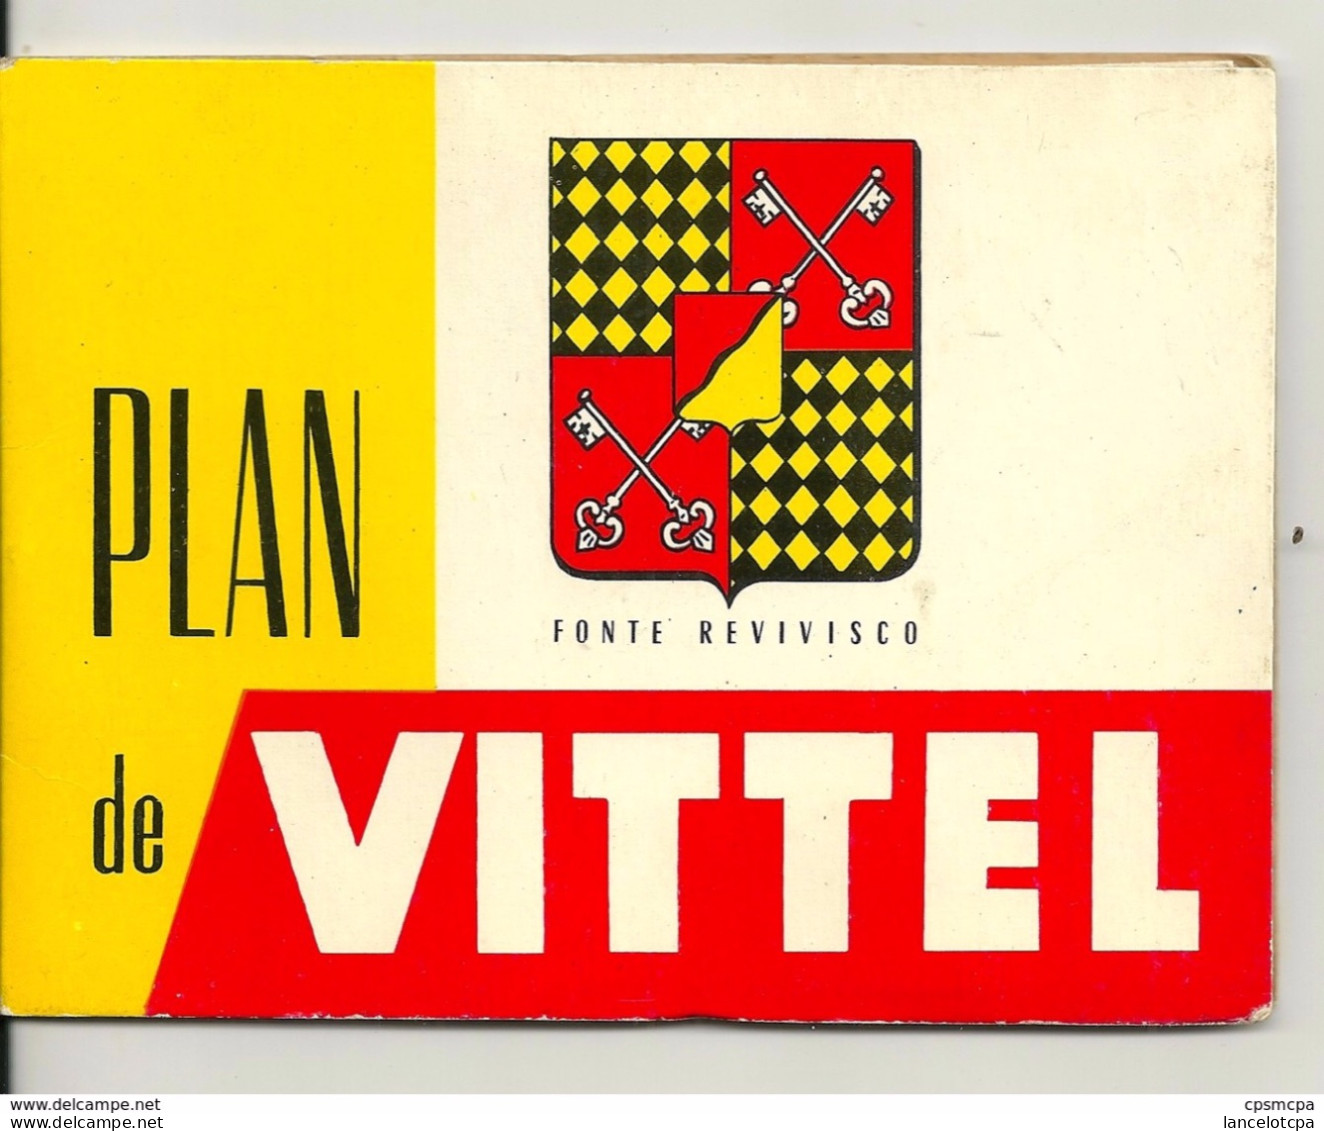 88 - VITTEL / PLAN ANCIEN DE LA VILLE - Autres Plans